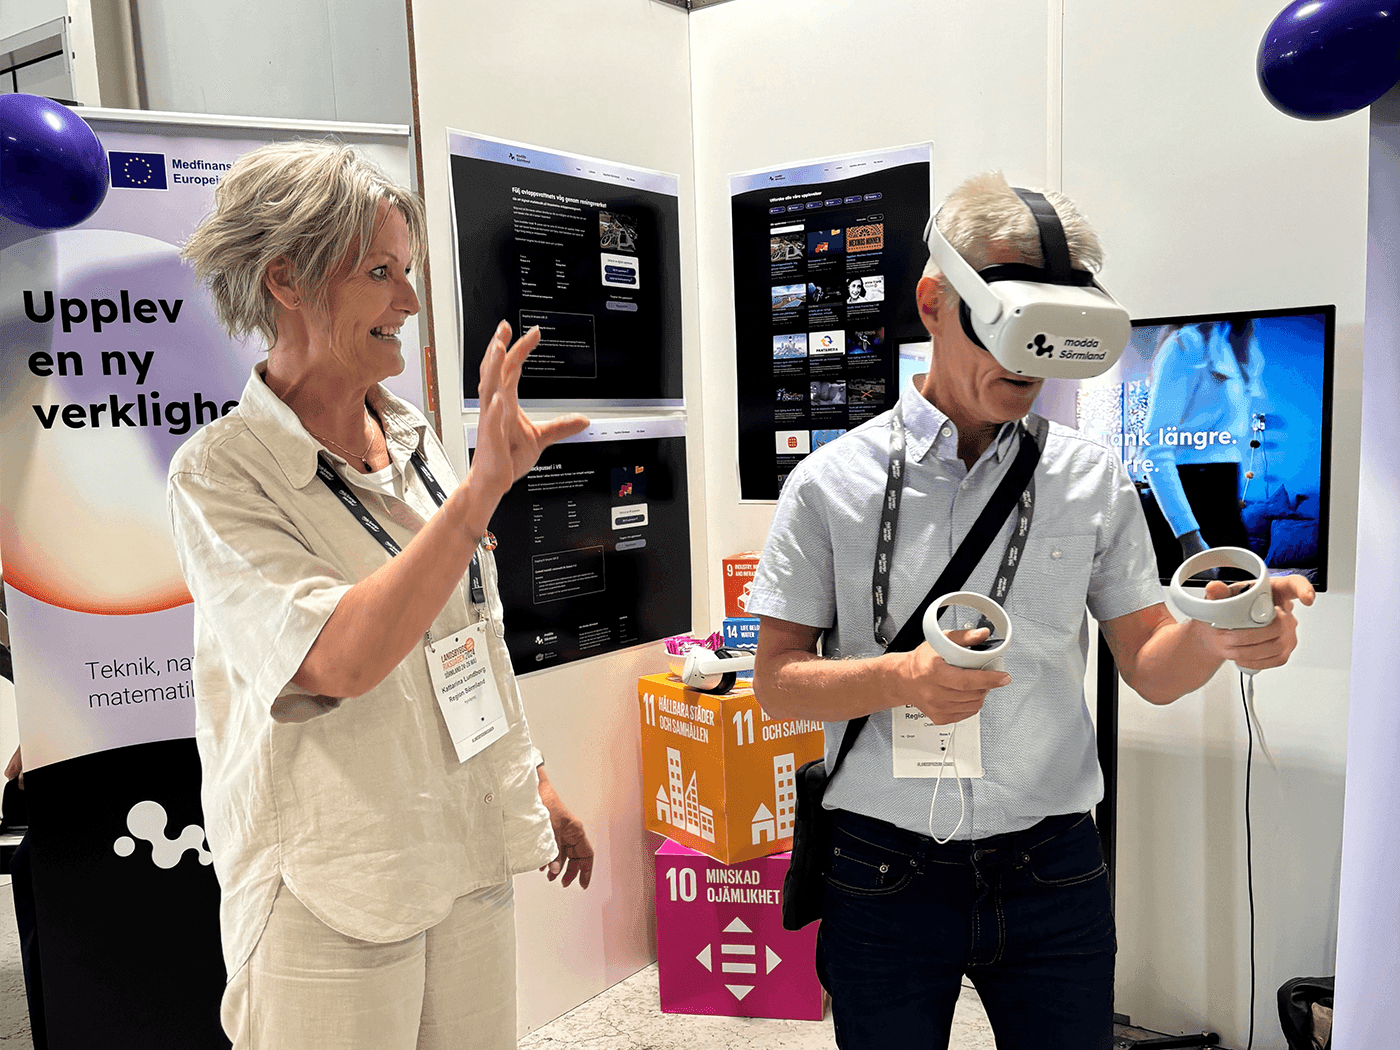 Kvinna som assisterar en man i VR headset